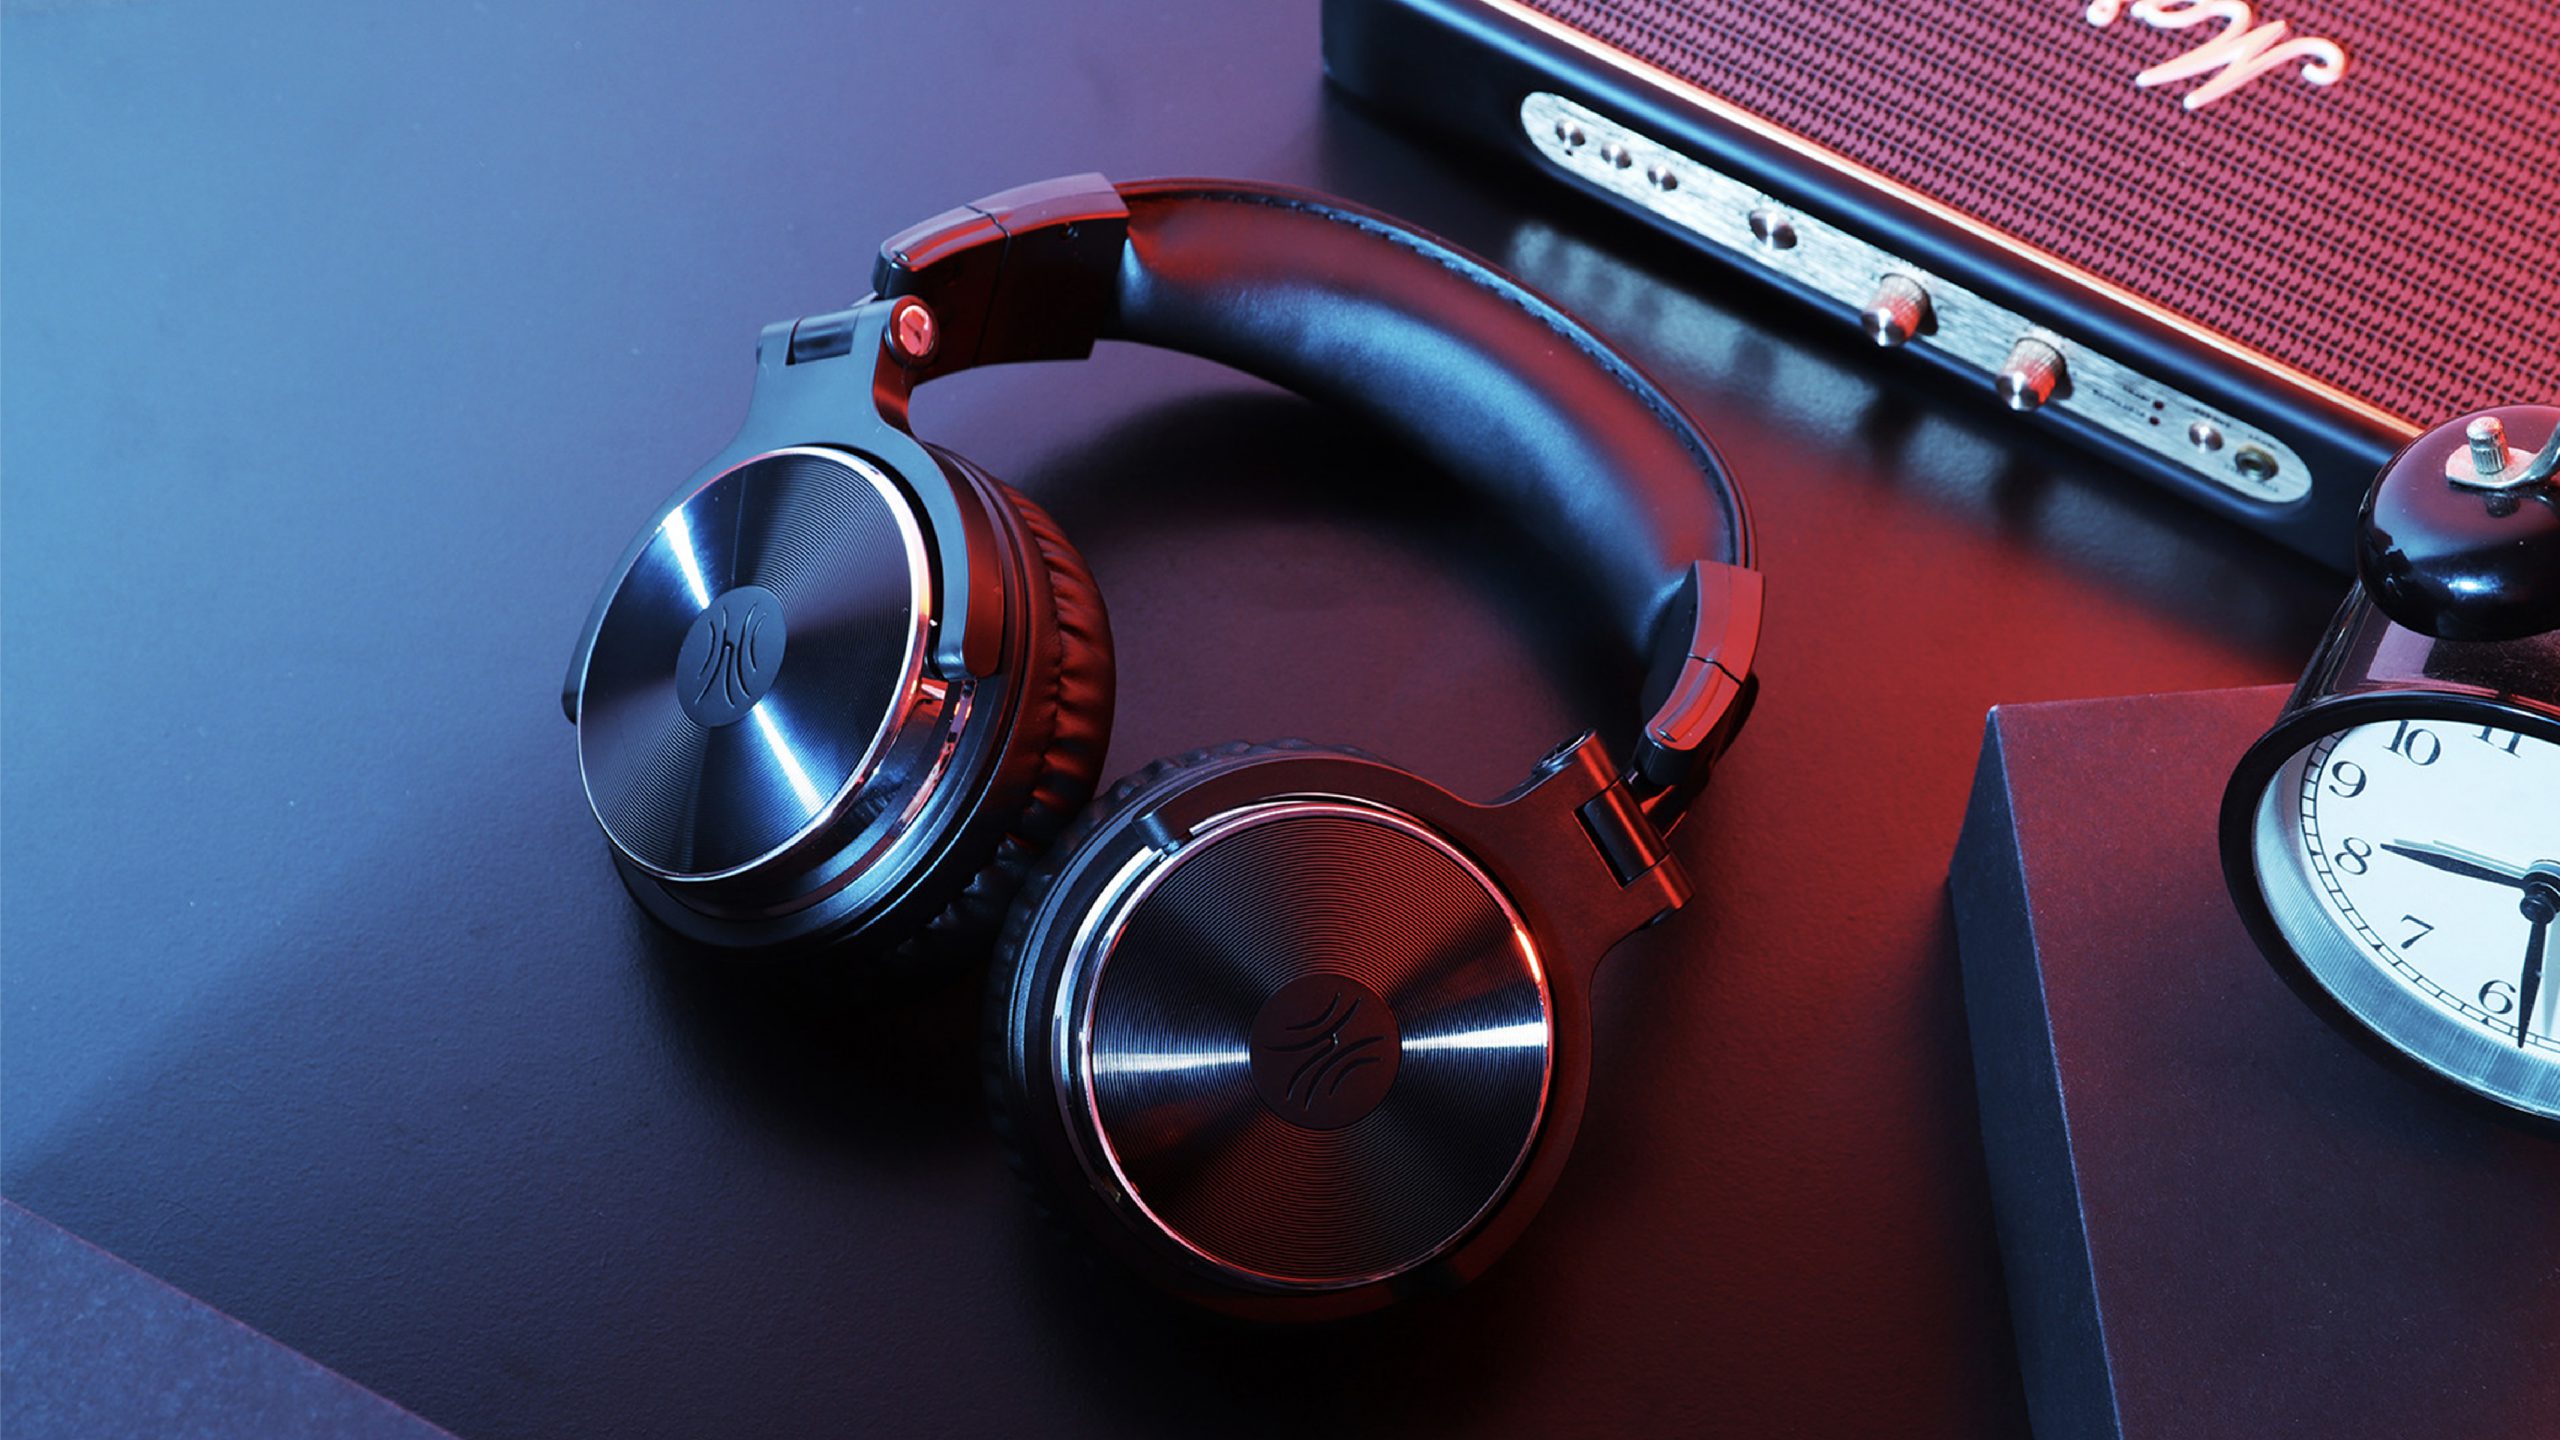 Tai nghe Headphone OneOdio Pro 10